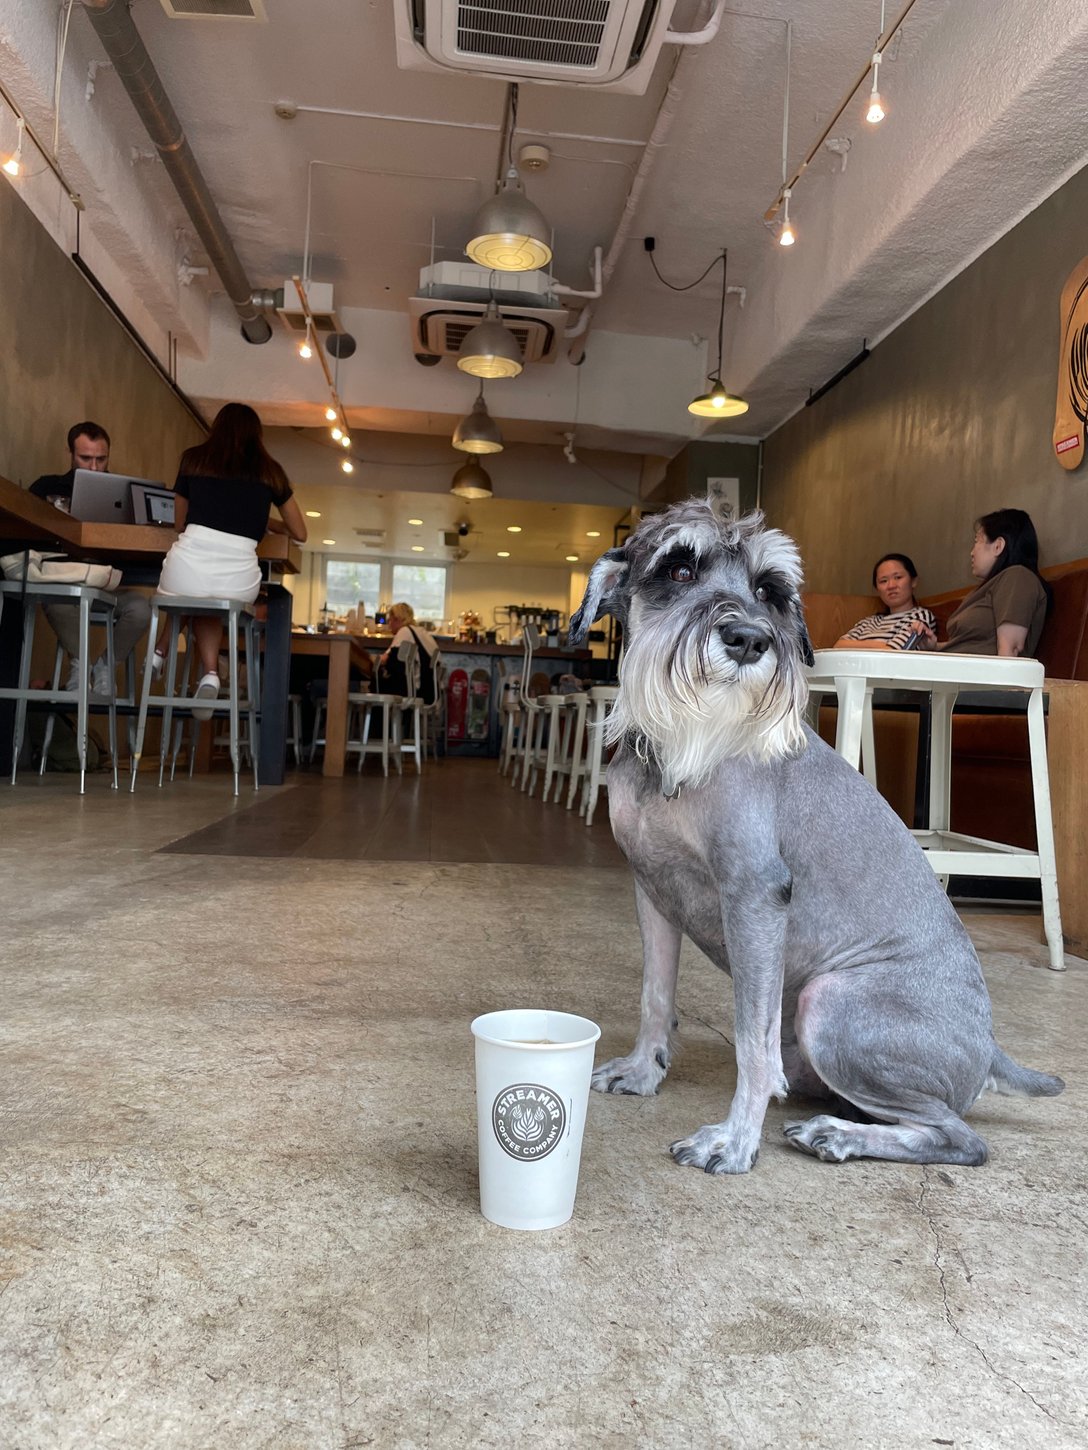 渋谷のカフェ「ストリーマーコーヒーカンパニー」の内観と犬